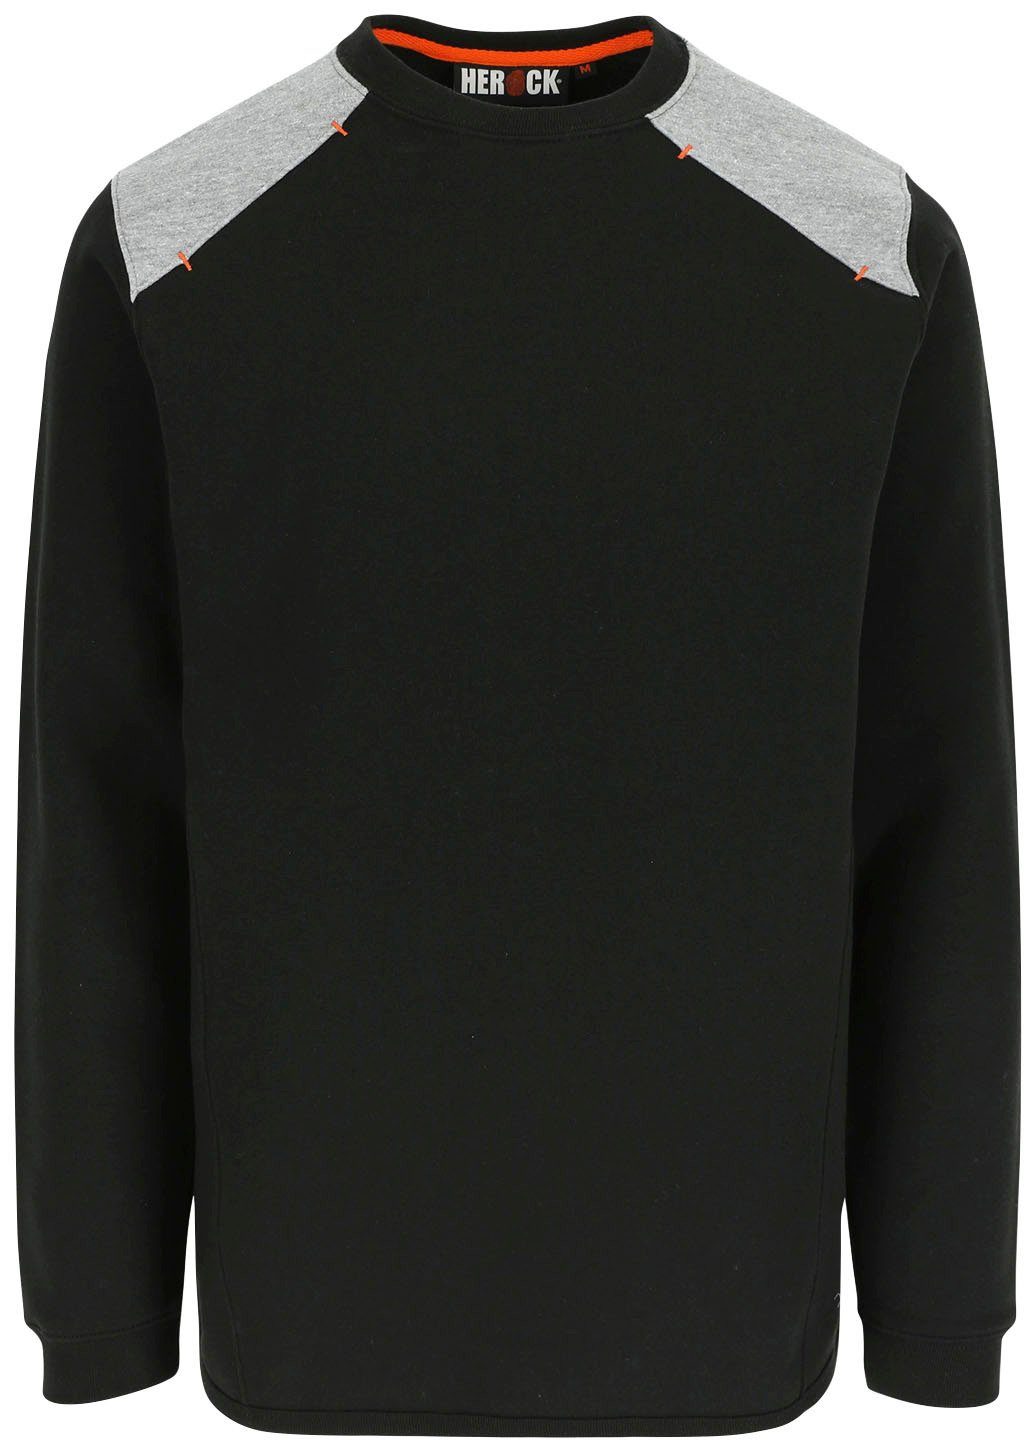 Rückenteil Rippstrick Rundhalspullover Sweater Artemis Kragen Langes schwarz - Tragegefühl - weiches Herock